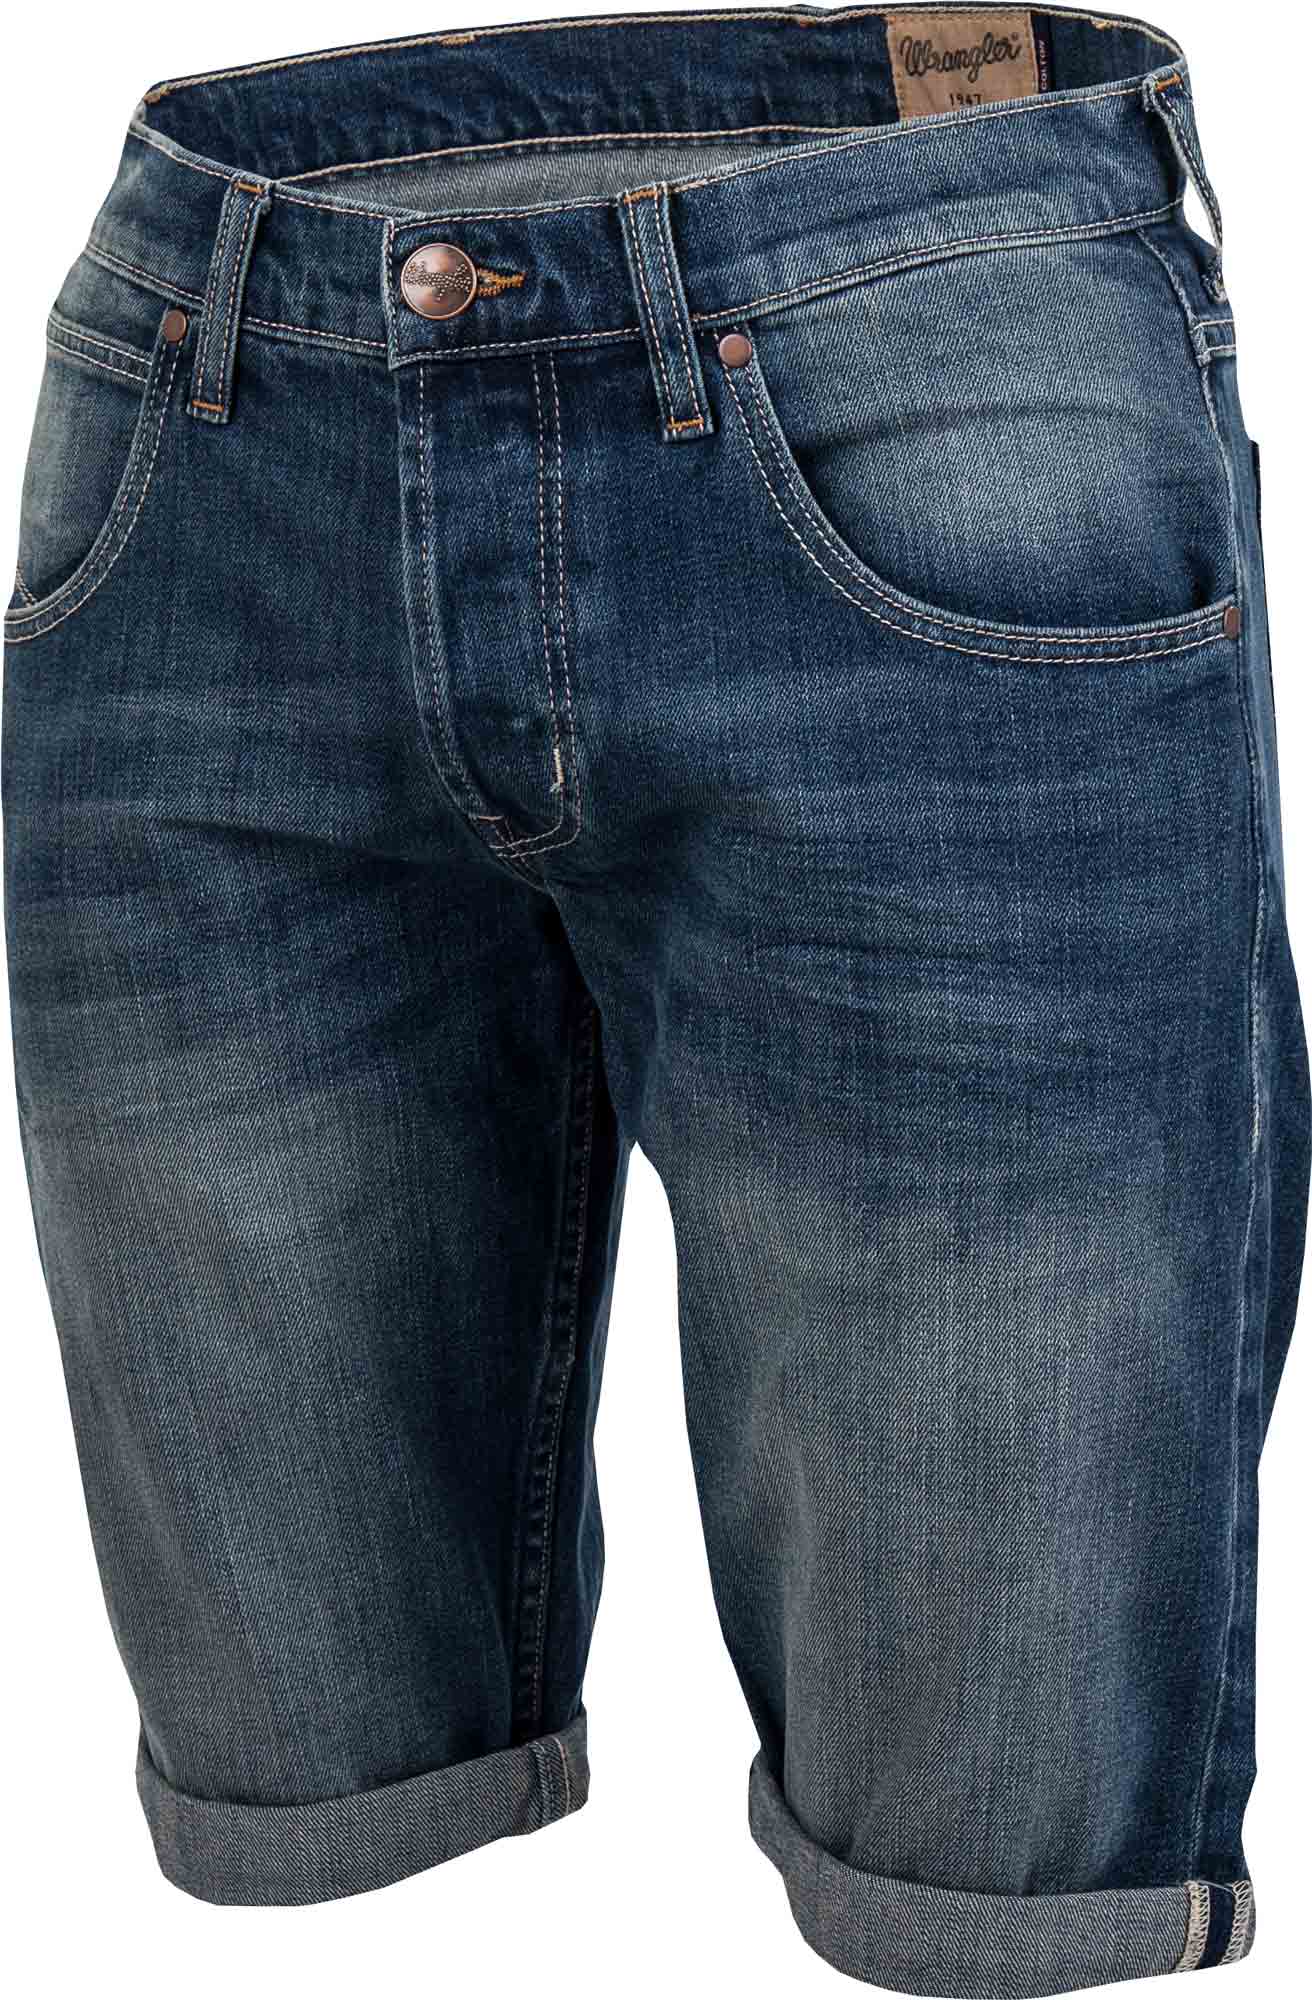 Pánské jeansové kraťasy